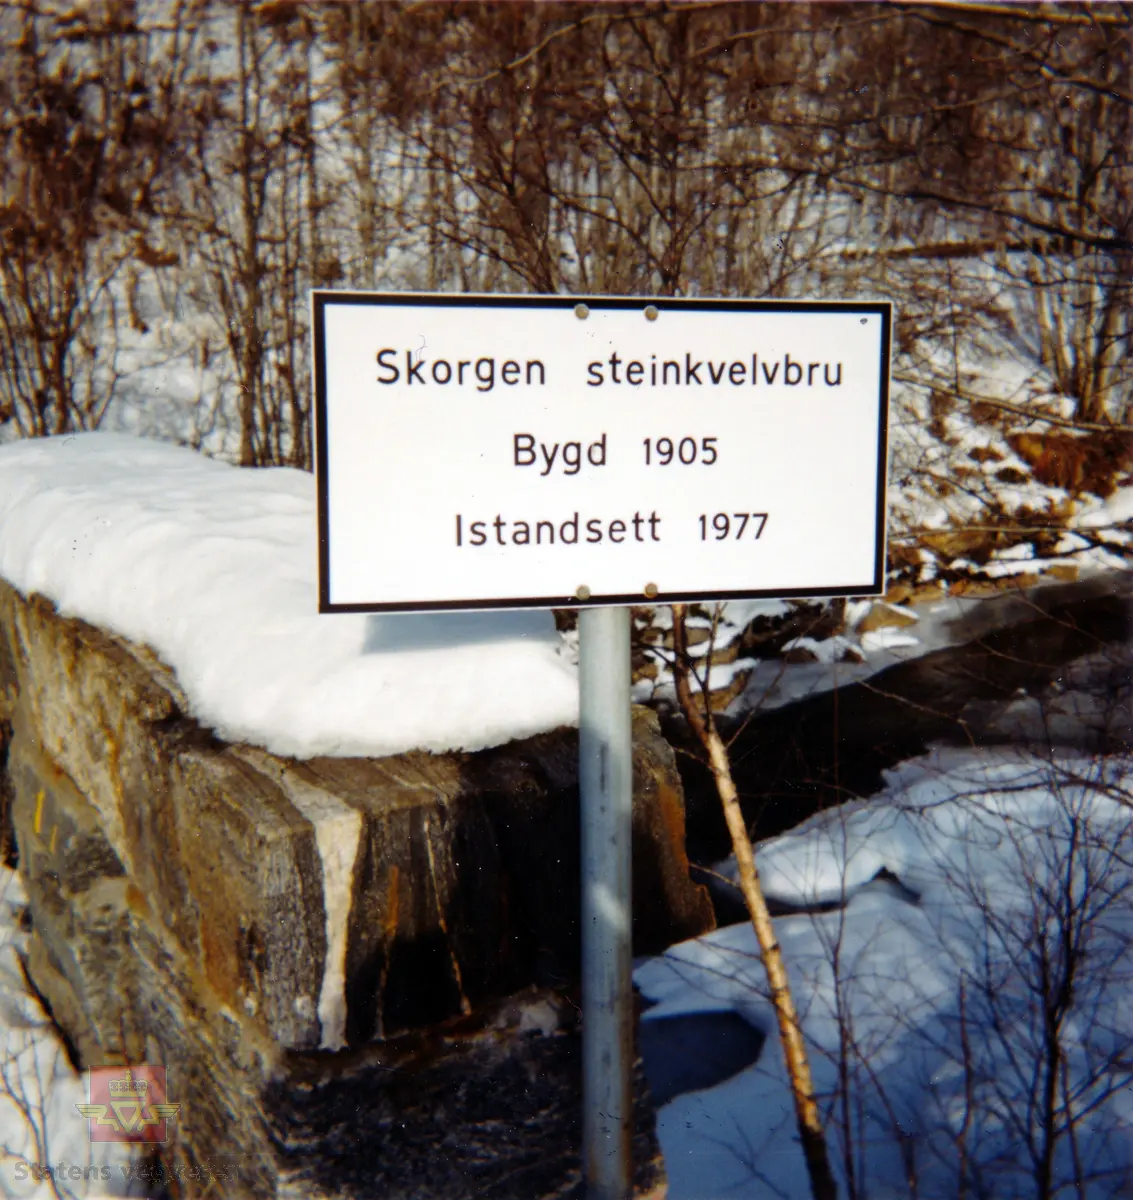 Skilt ved Skorgen steinhvelvbru av hogget stein som ble bygd i 1905 og restaurert i 1977.

På skiltet står: "Skorgen steinkvelvbru Bygd 1905 Istandsett 1977".

Merking bak på bilde: "Foto: E. Bakke 1988".

